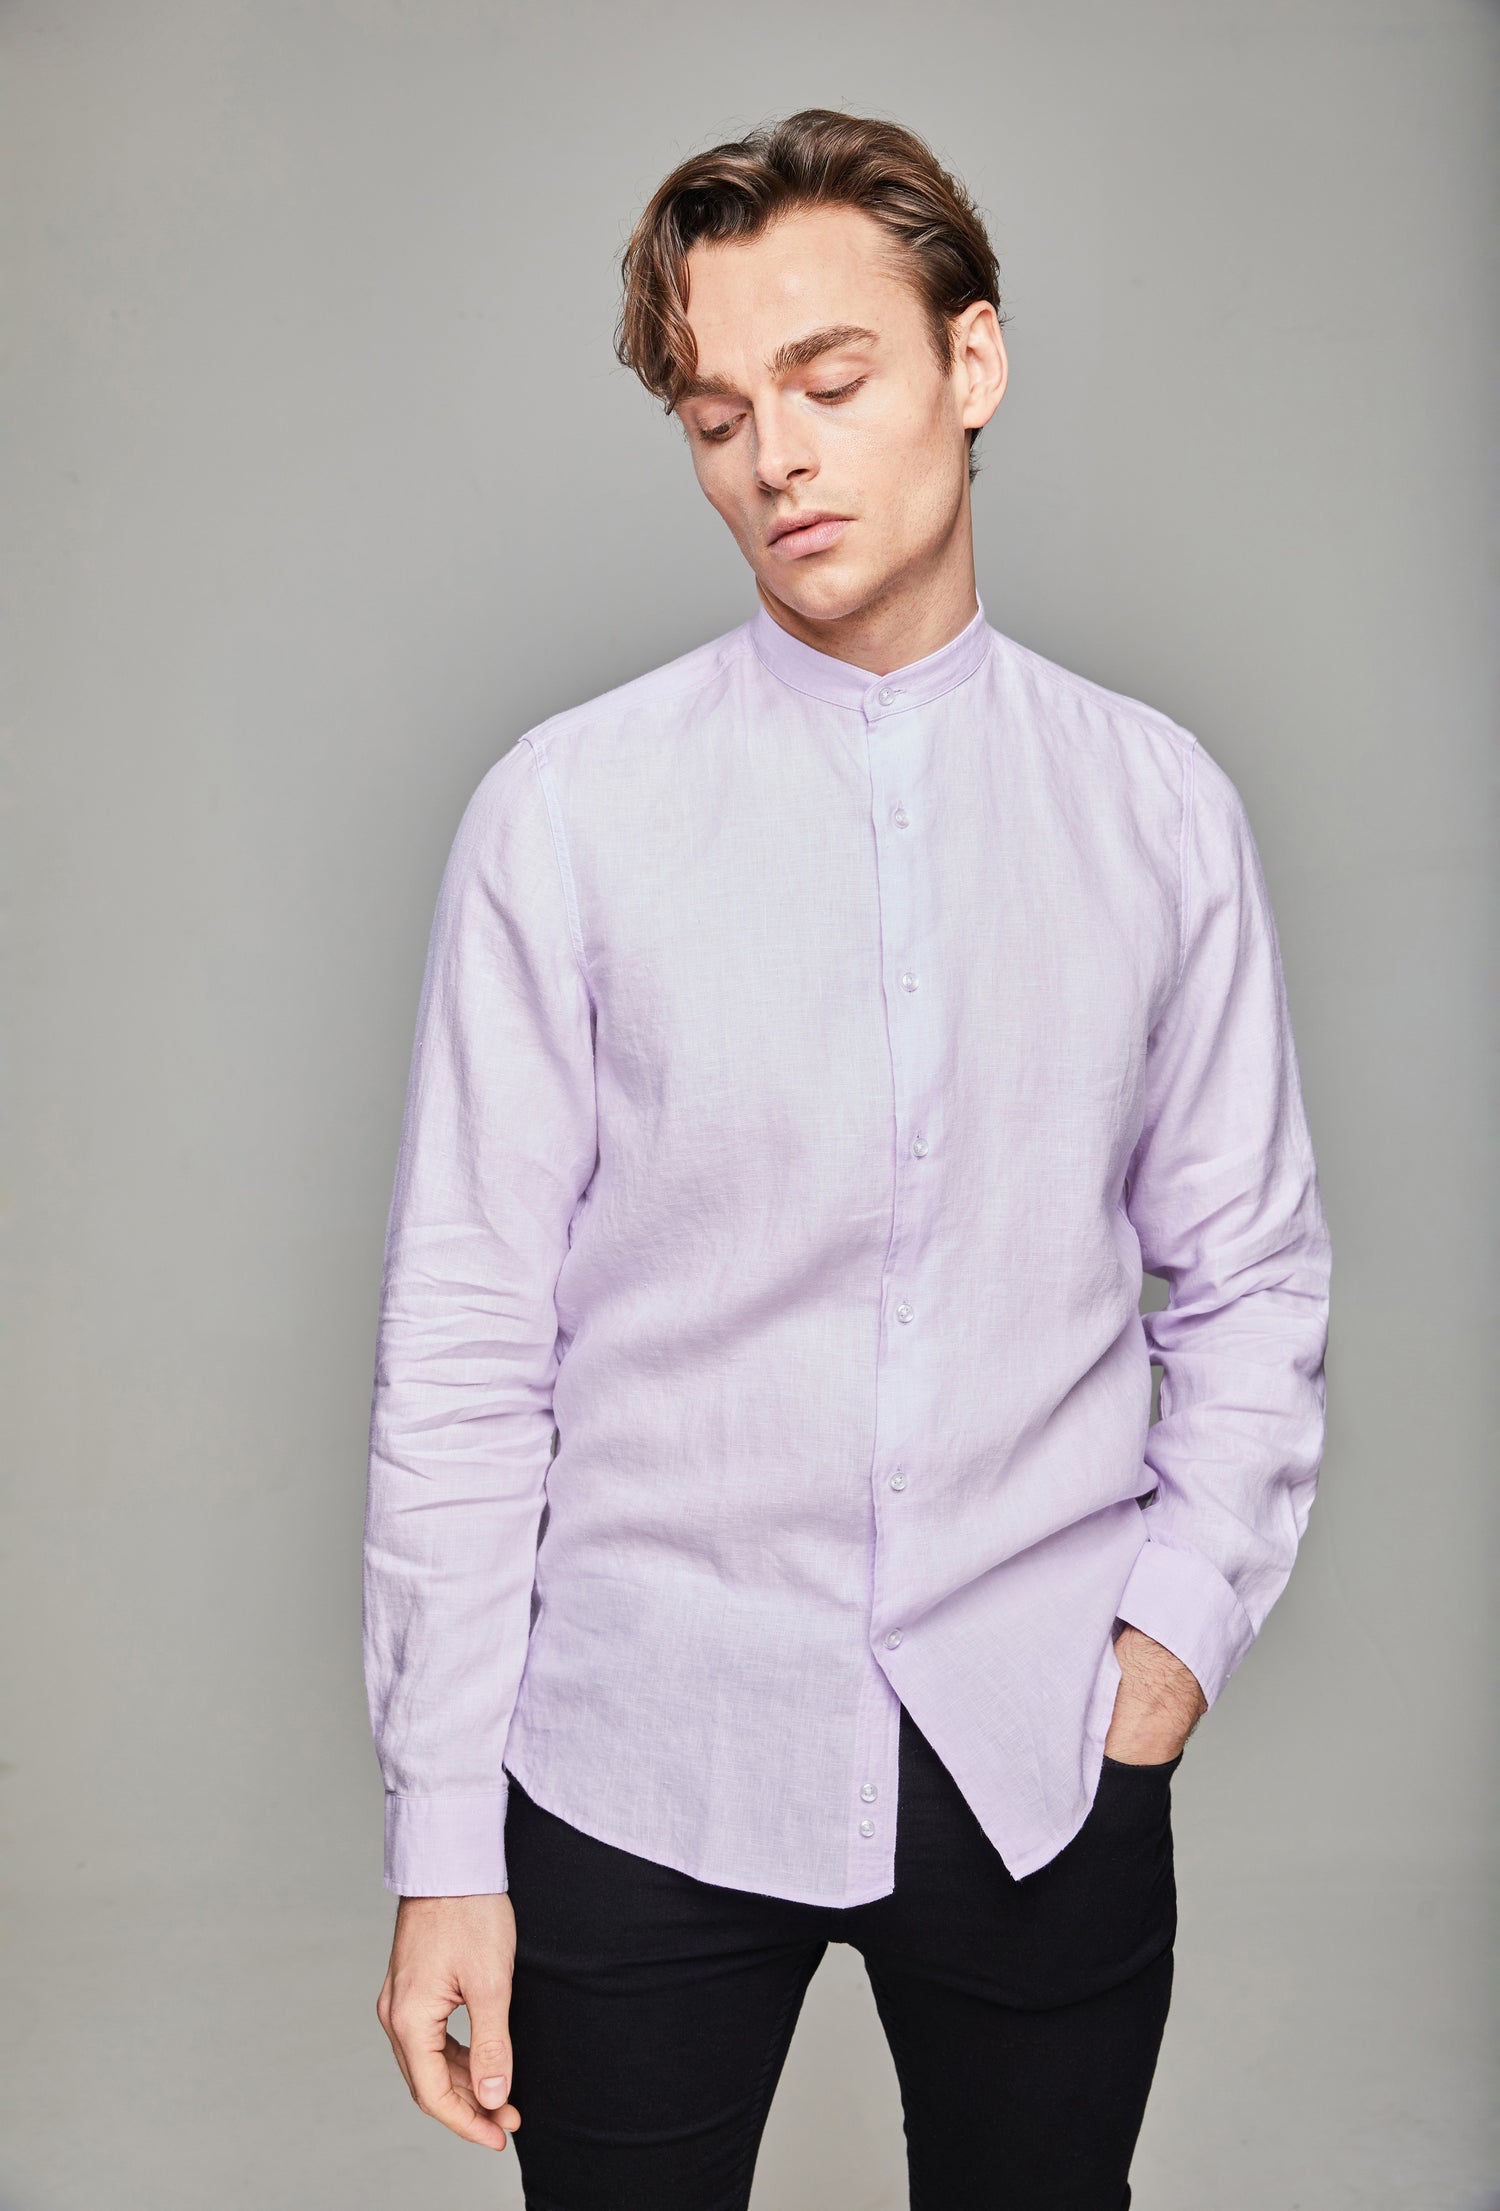 Firawn  Jidu Mens Band Collar Linen Shirt - Pink Lavender